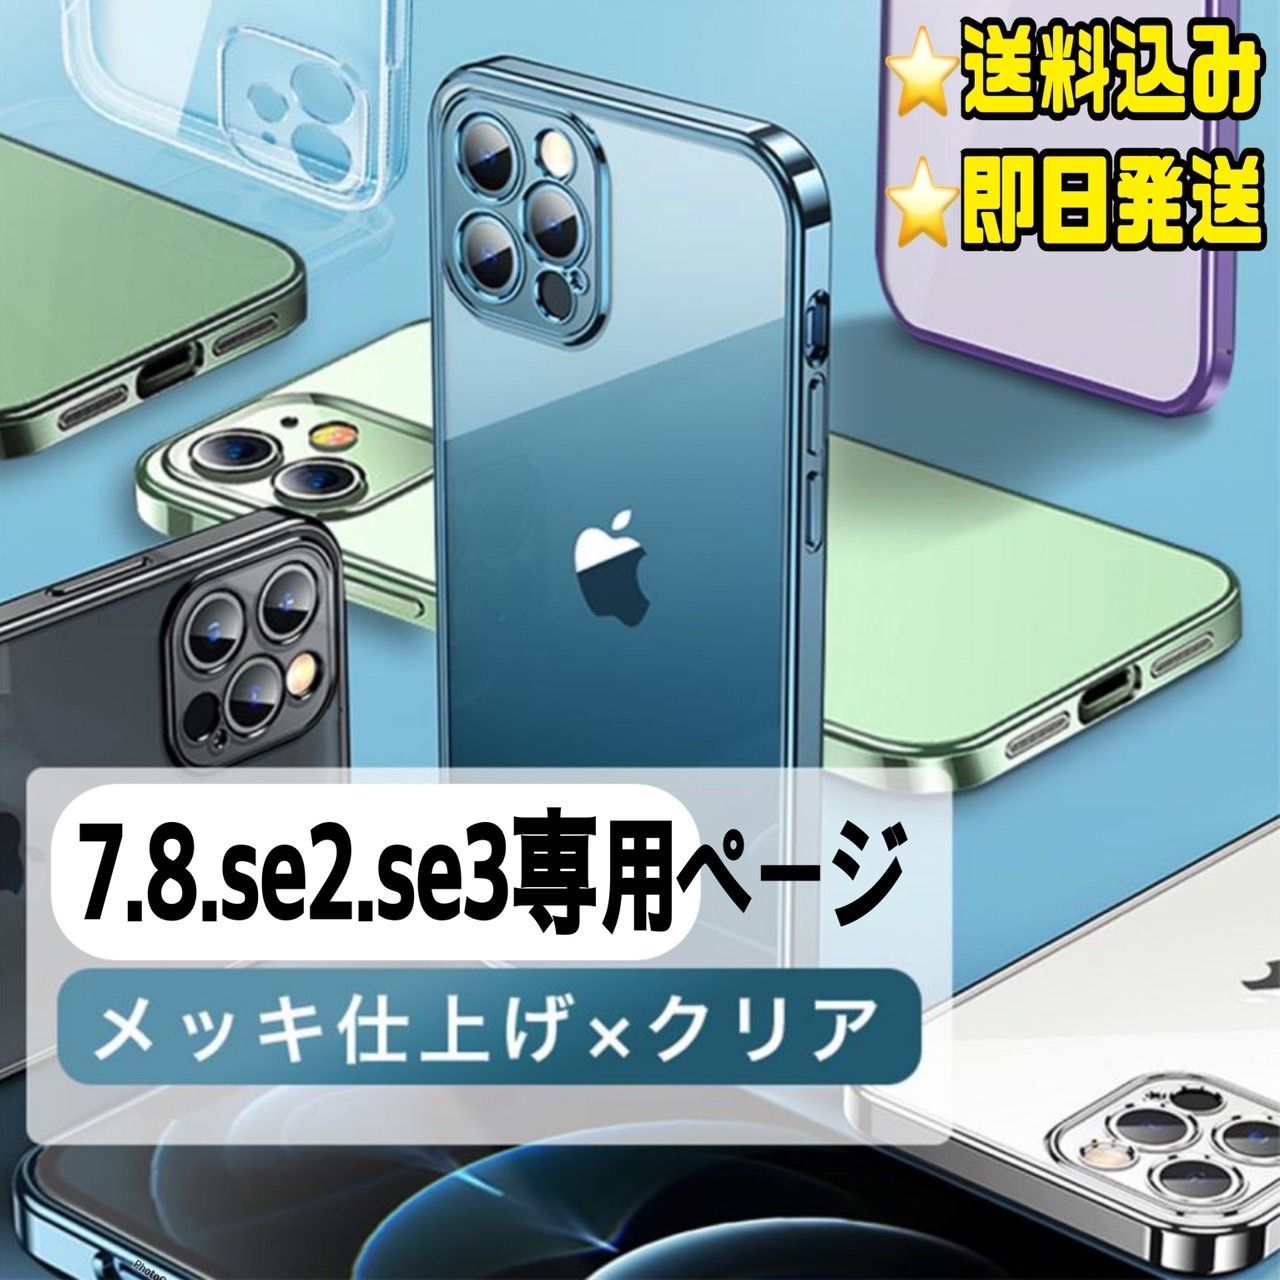 ☆7.8.se2.se3専用ページ☆シンプル メタリック 軽量 スマホ iphone